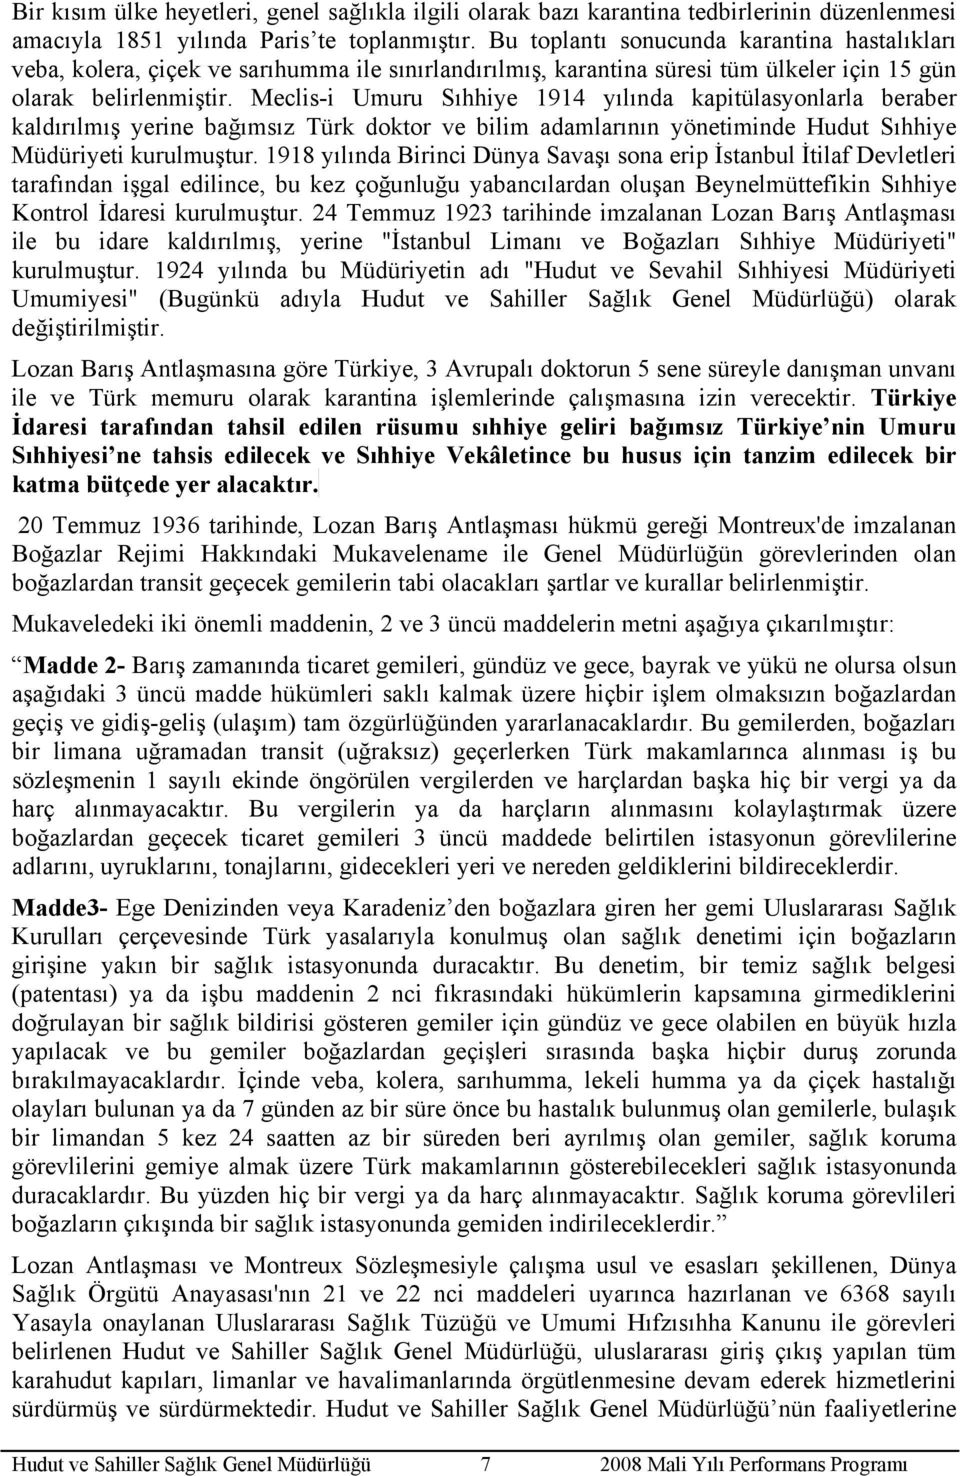 Meclis-i Umuru Sıhhiye 1914 yılında kapitülasyonlarla beraber kaldırılmış yerine bağımsız Türk doktor ve bilim adamlarının yönetiminde Hudut Sıhhiye Müdüriyeti kurulmuştur.